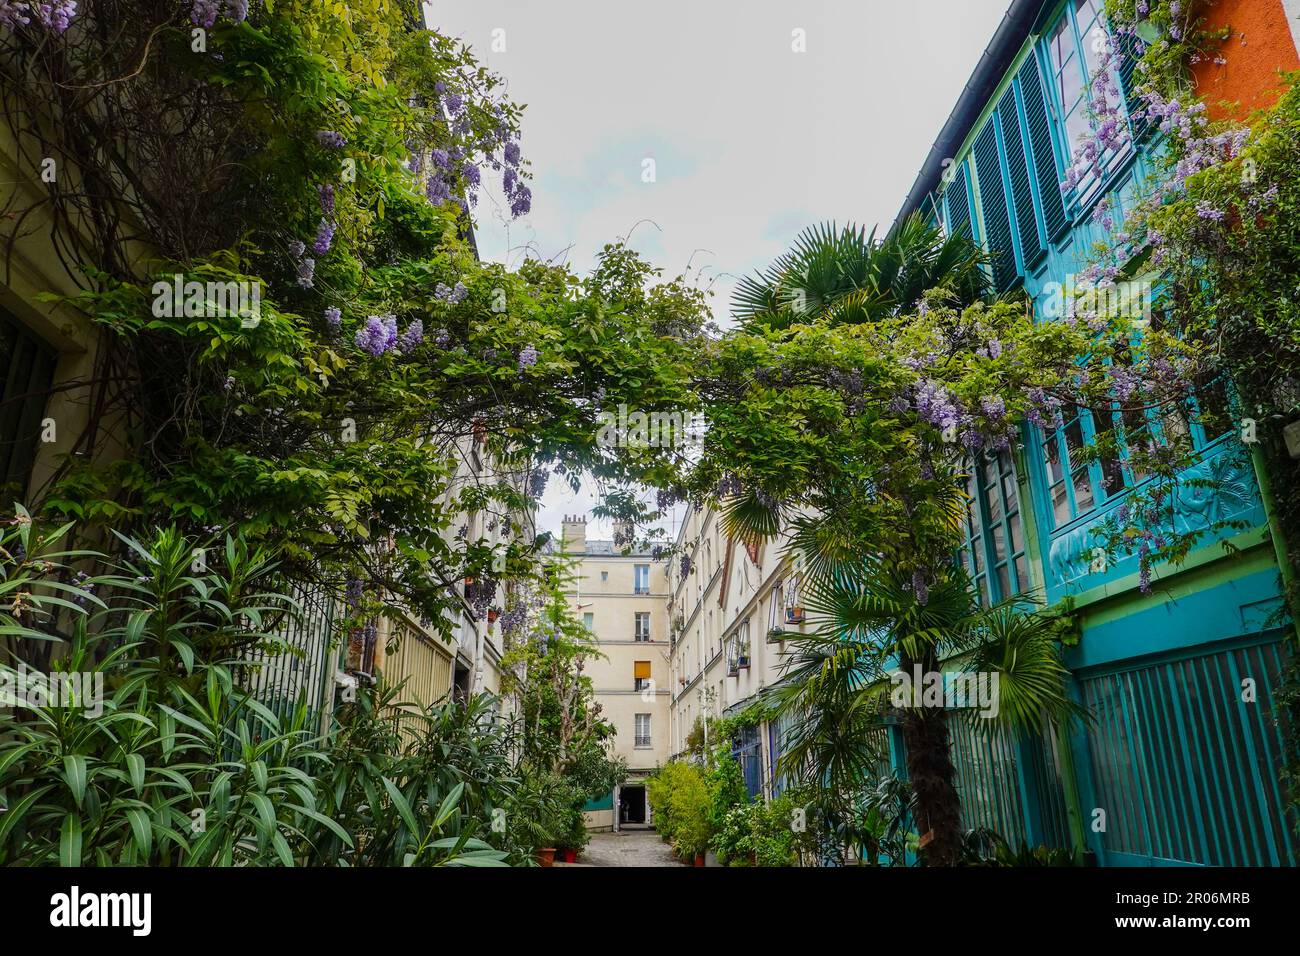 Üppige Pflanzen, La Cité du Figuier, versteckte Straße im 11. Arrondissement, bekannt als Ort, wo Metallarbeiter im 19. Jahrhundert Geschäfte hatten, Paris. Stockfoto